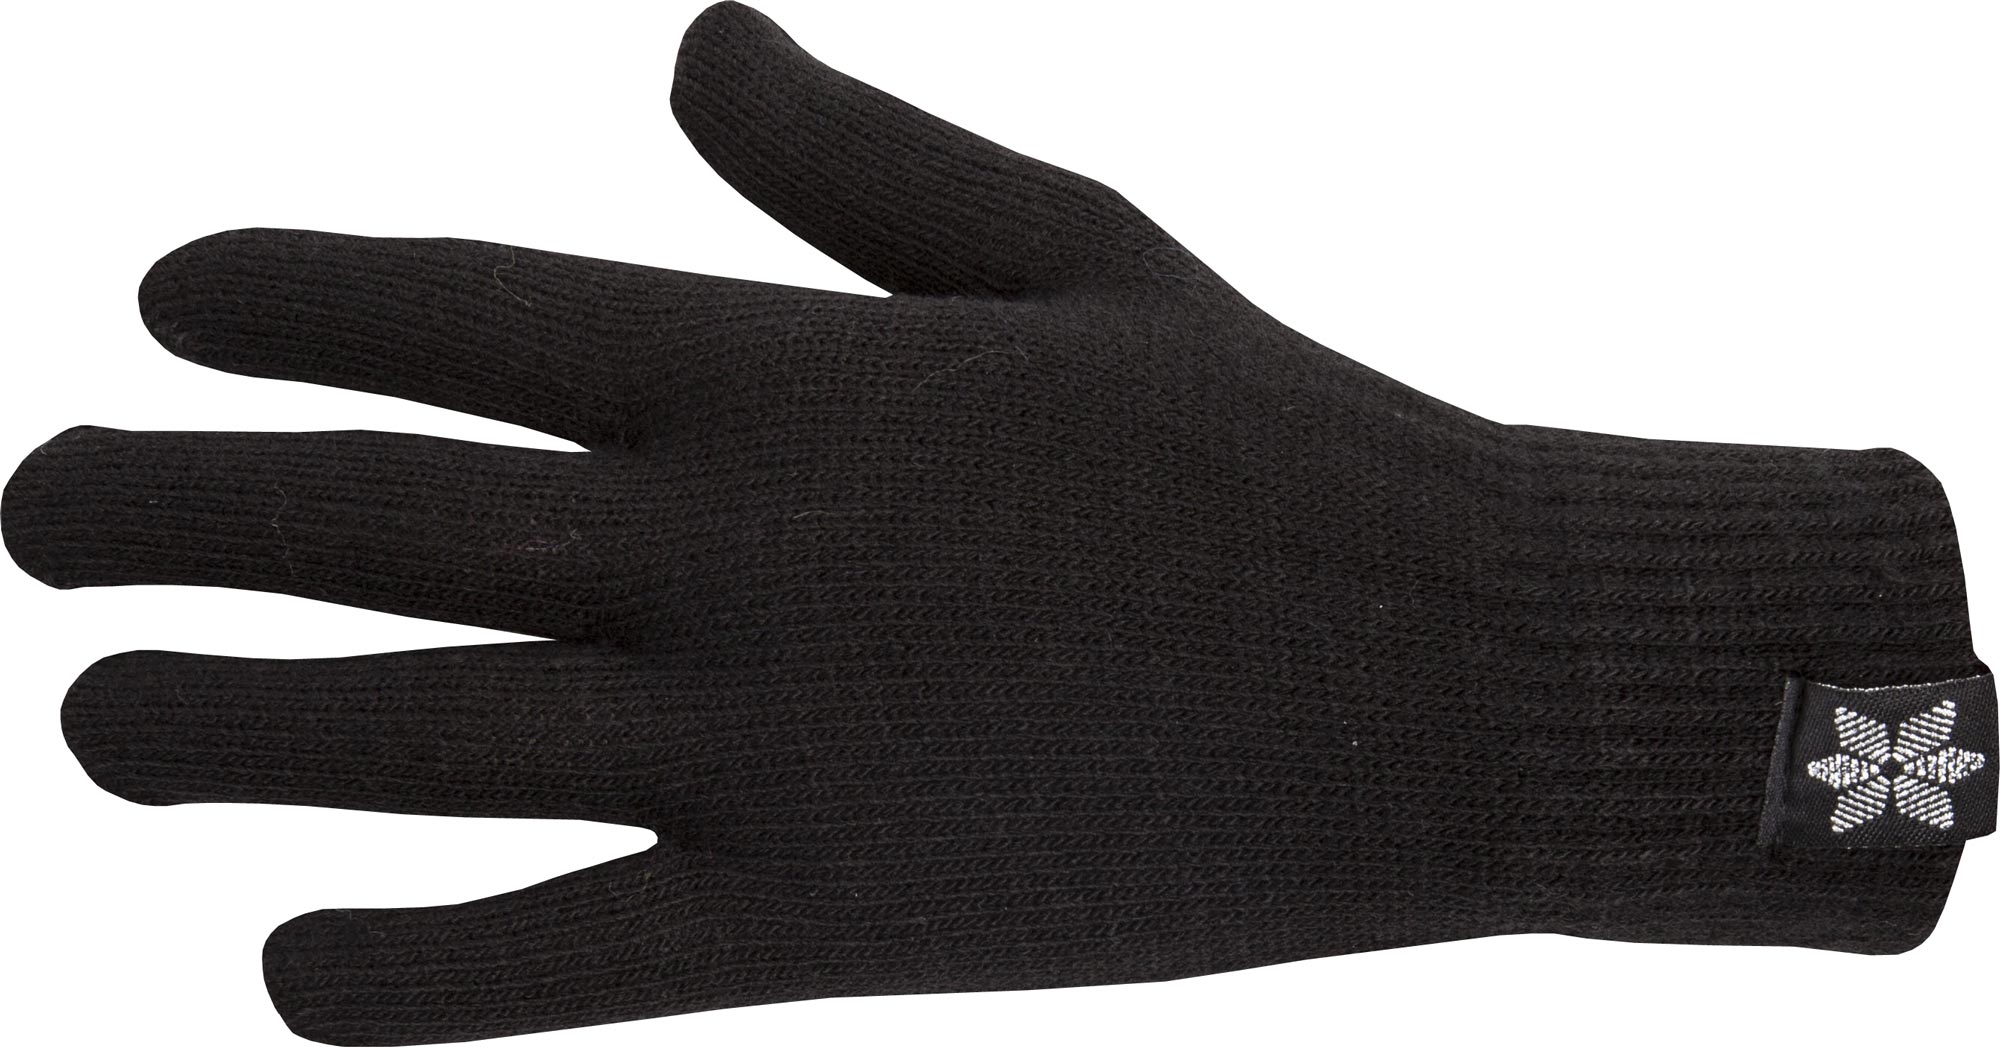 Women’s knitted gloves